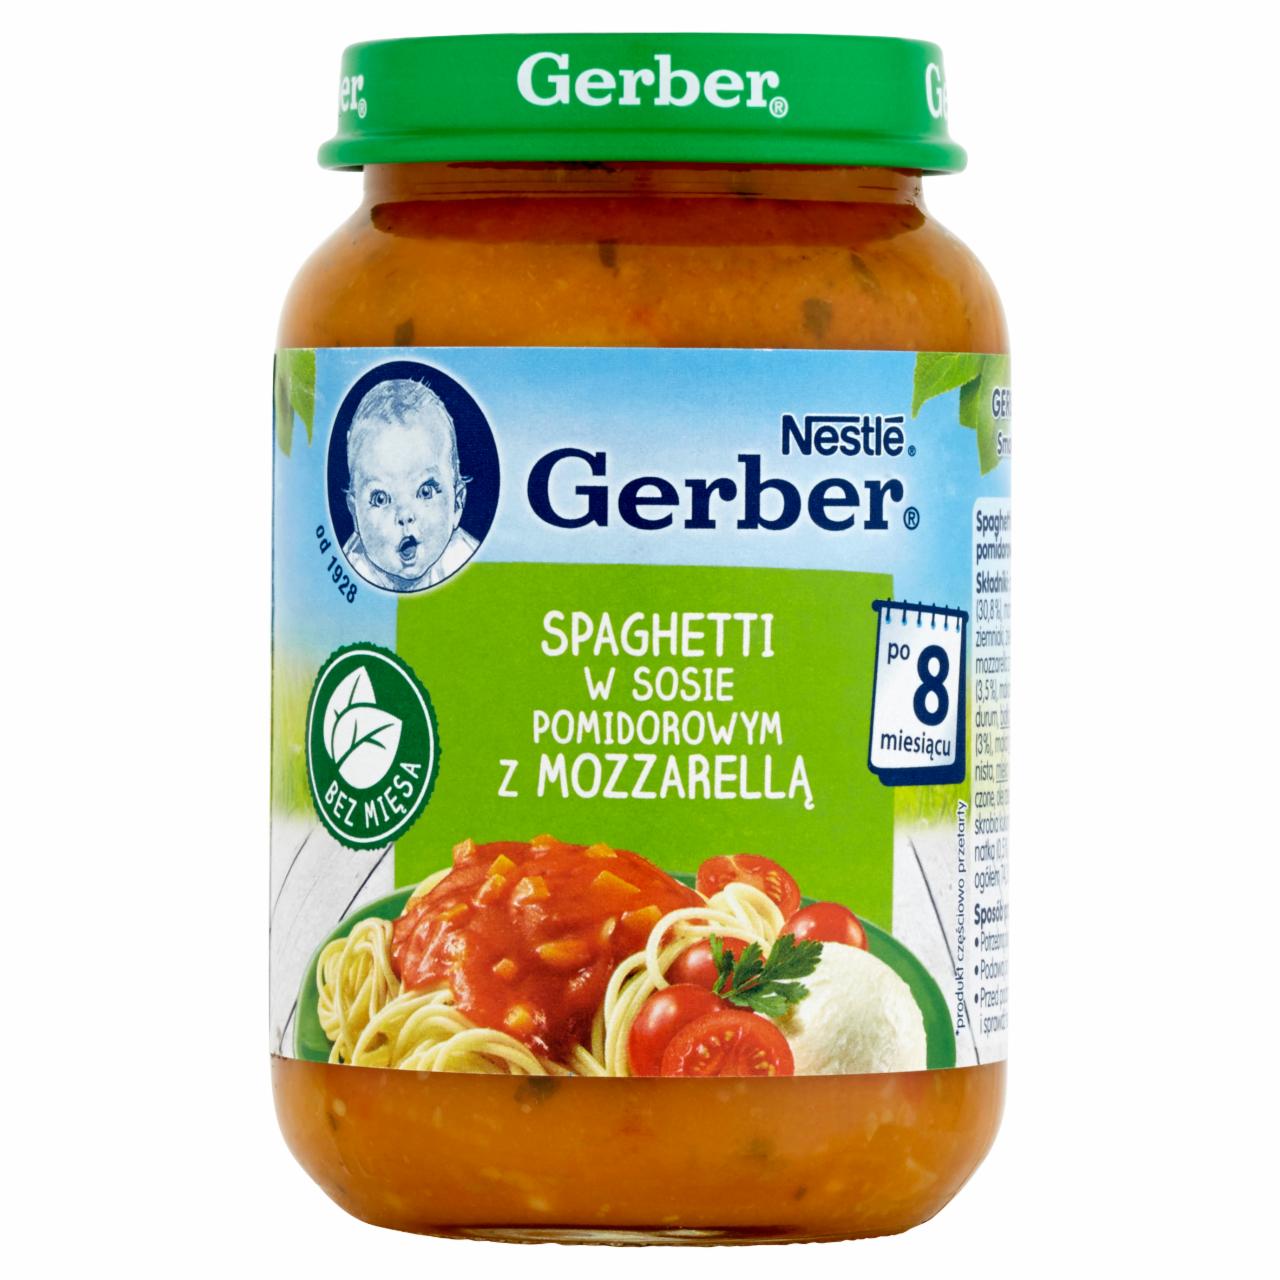 Zdjęcia - Gerber Spaghetti w sosie pomidorowym z mozzarellą po 8 miesiącu 190 g